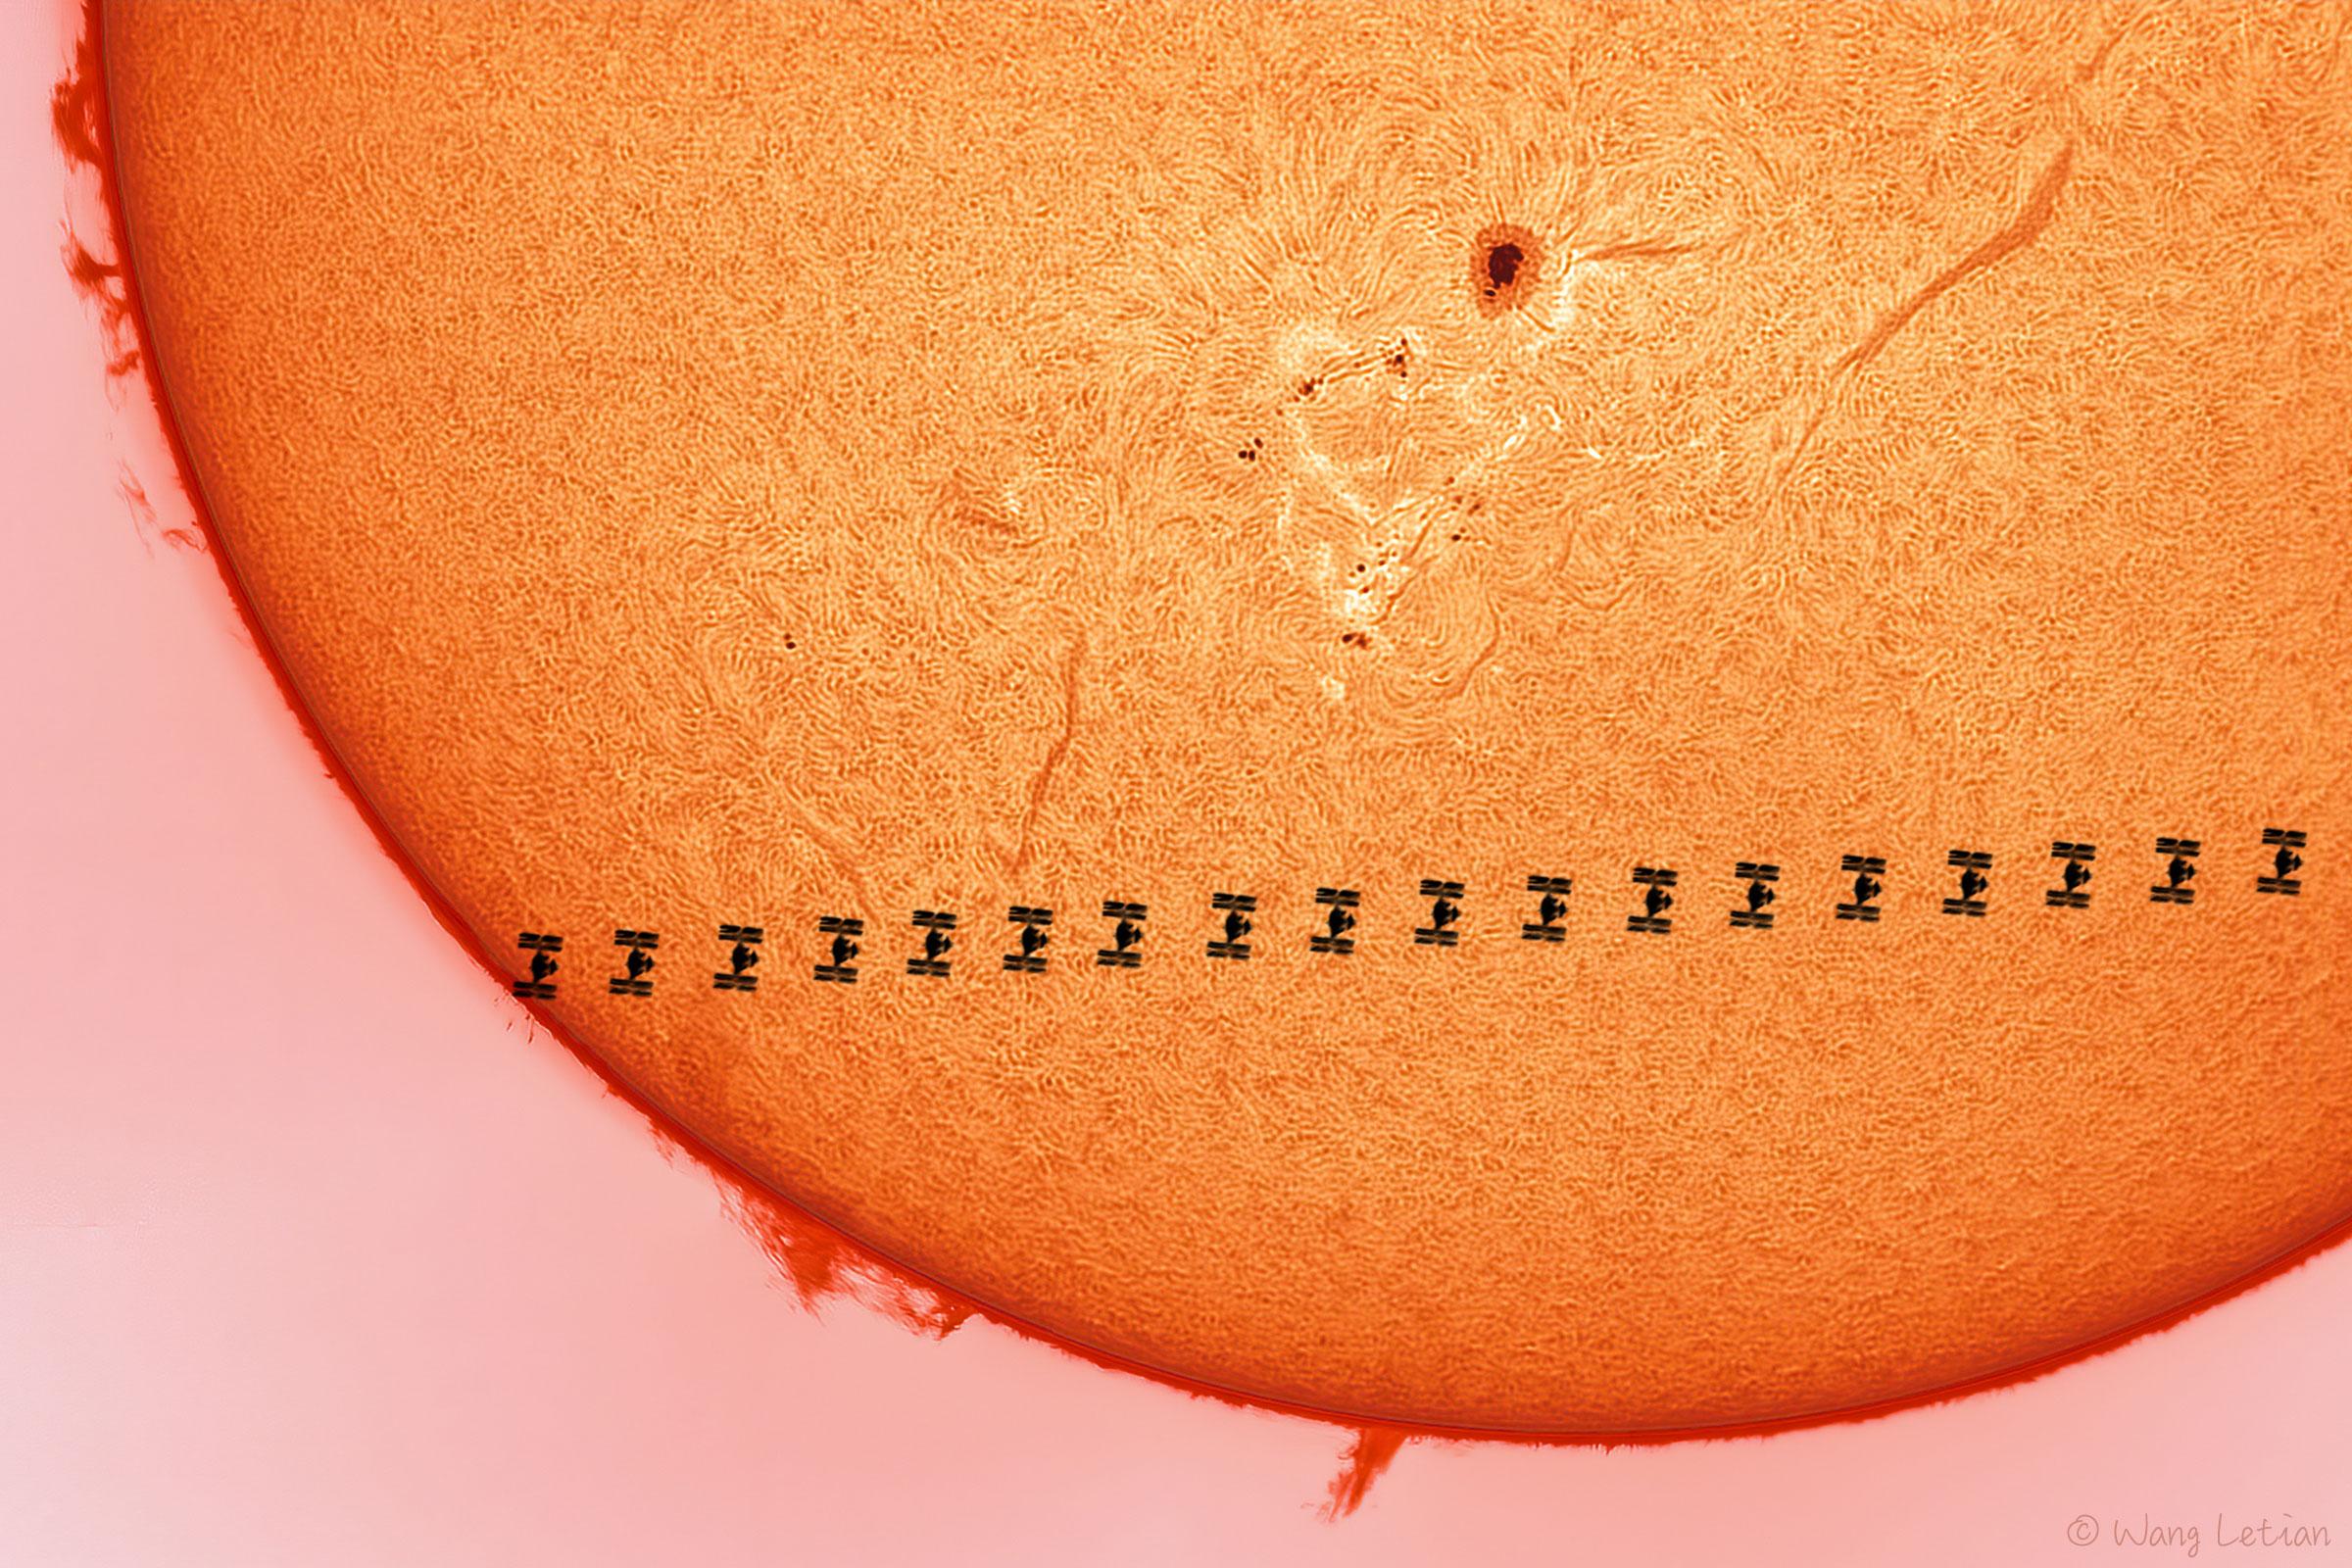 ثلث قرص الشمس تقريباً تعبر أمامه محطّة الفضاء الدولية بلقطات متقطّعة متتابعة بينما تظهر على سطحه الخيوط وبقعة شمسيّة داكنة وحوله الأشوظة